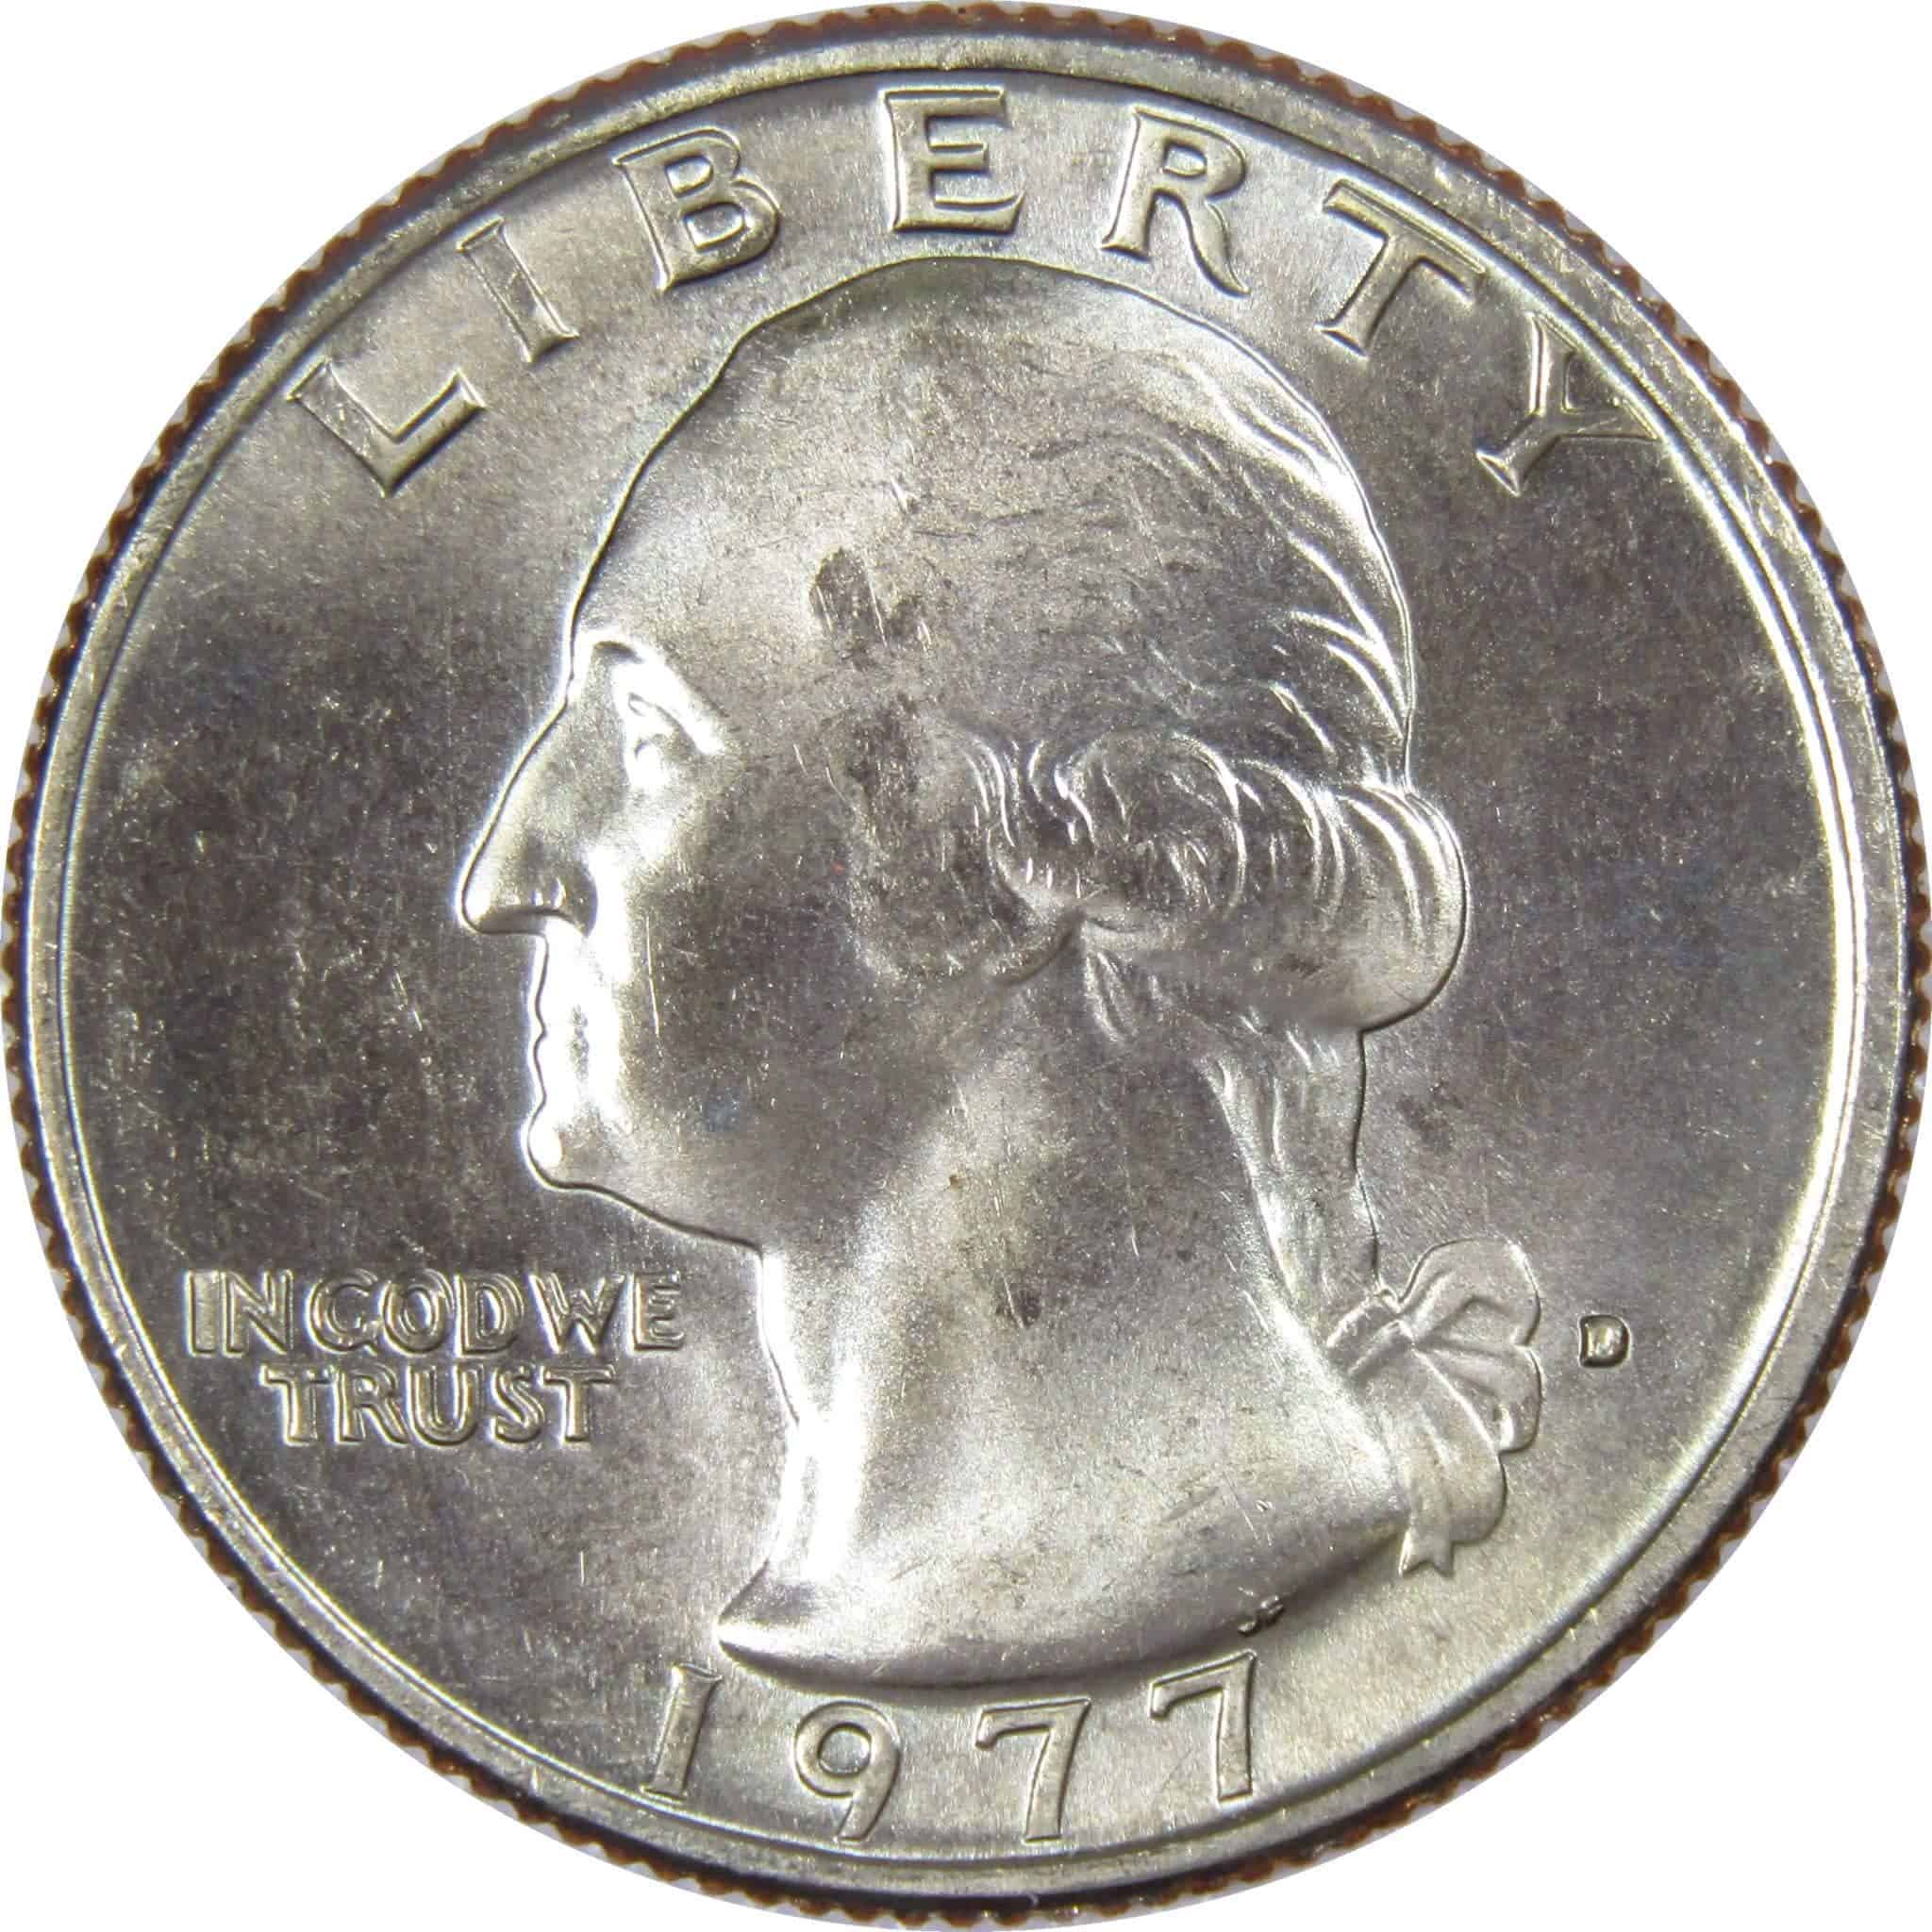 1977 Quarter